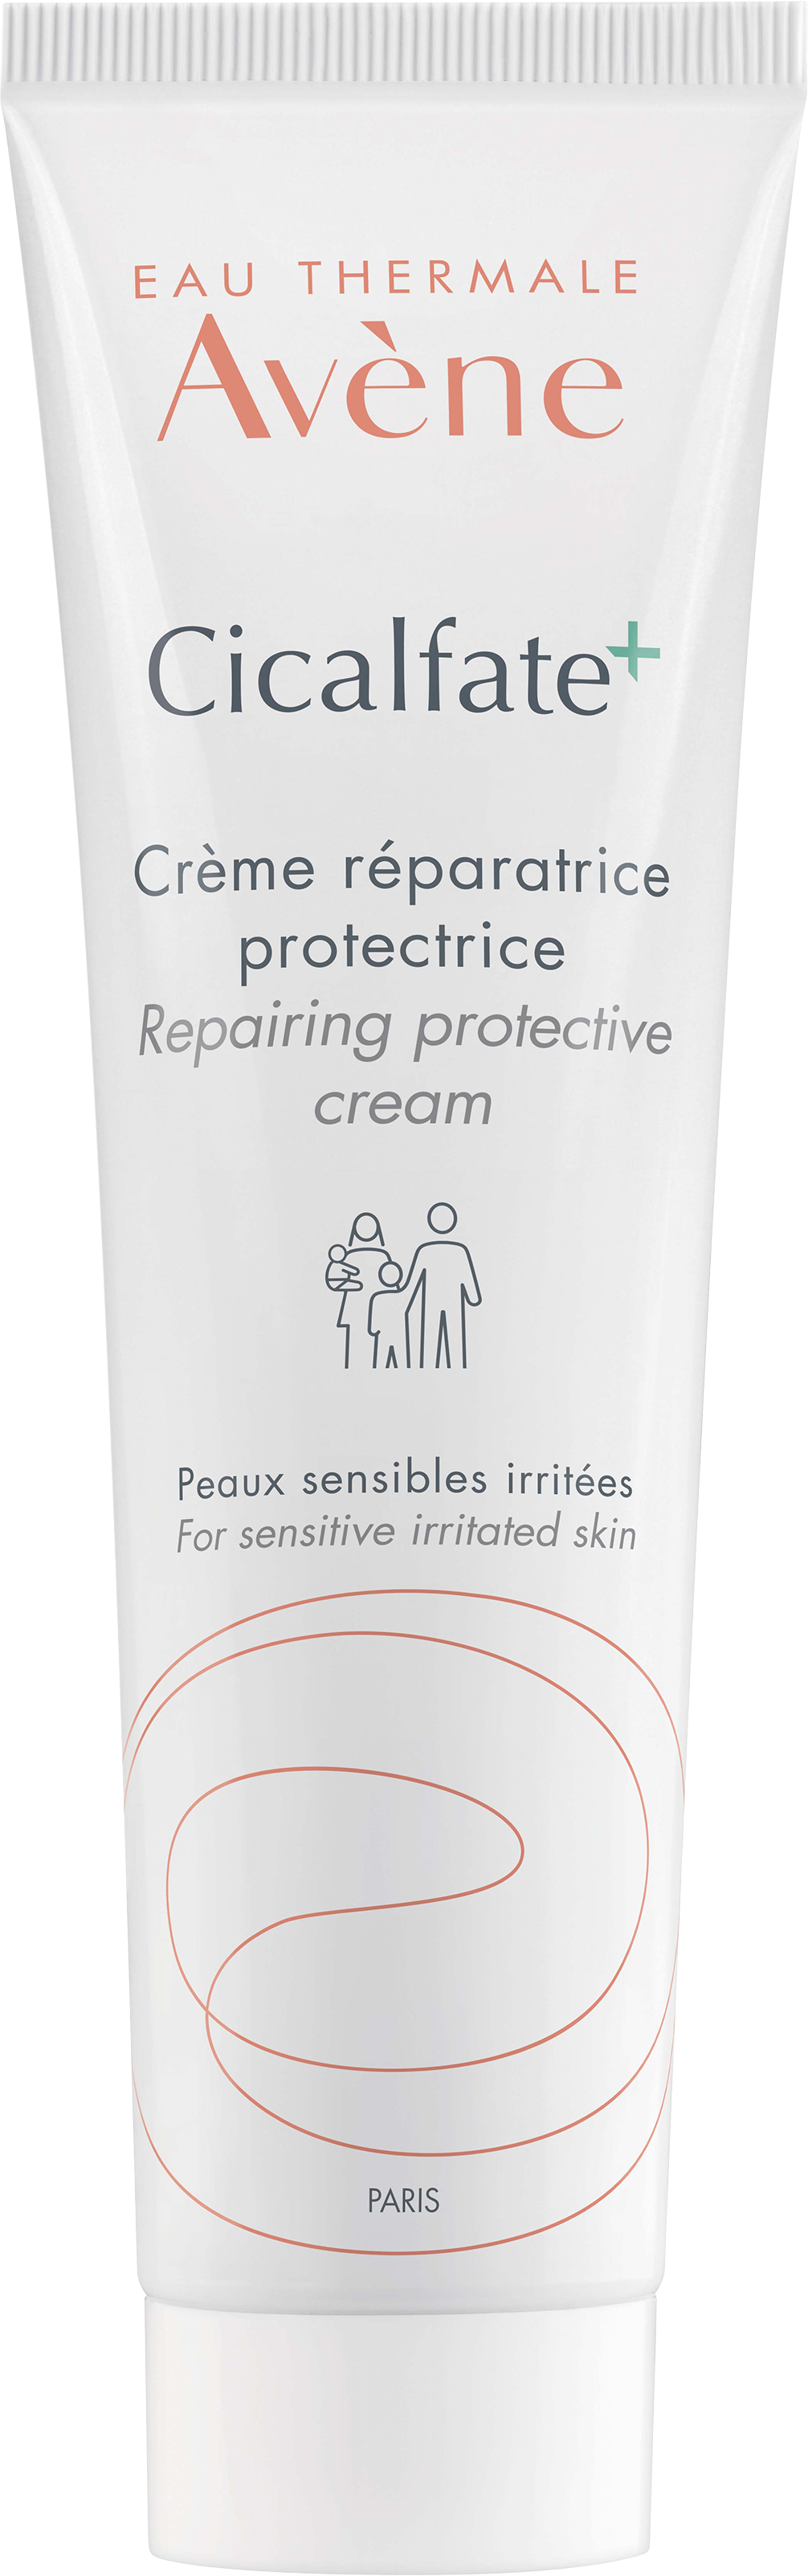 Cicalfate+ crème réparatrice protectrice peaux sensibles irritées Avène - tube de 100 ml